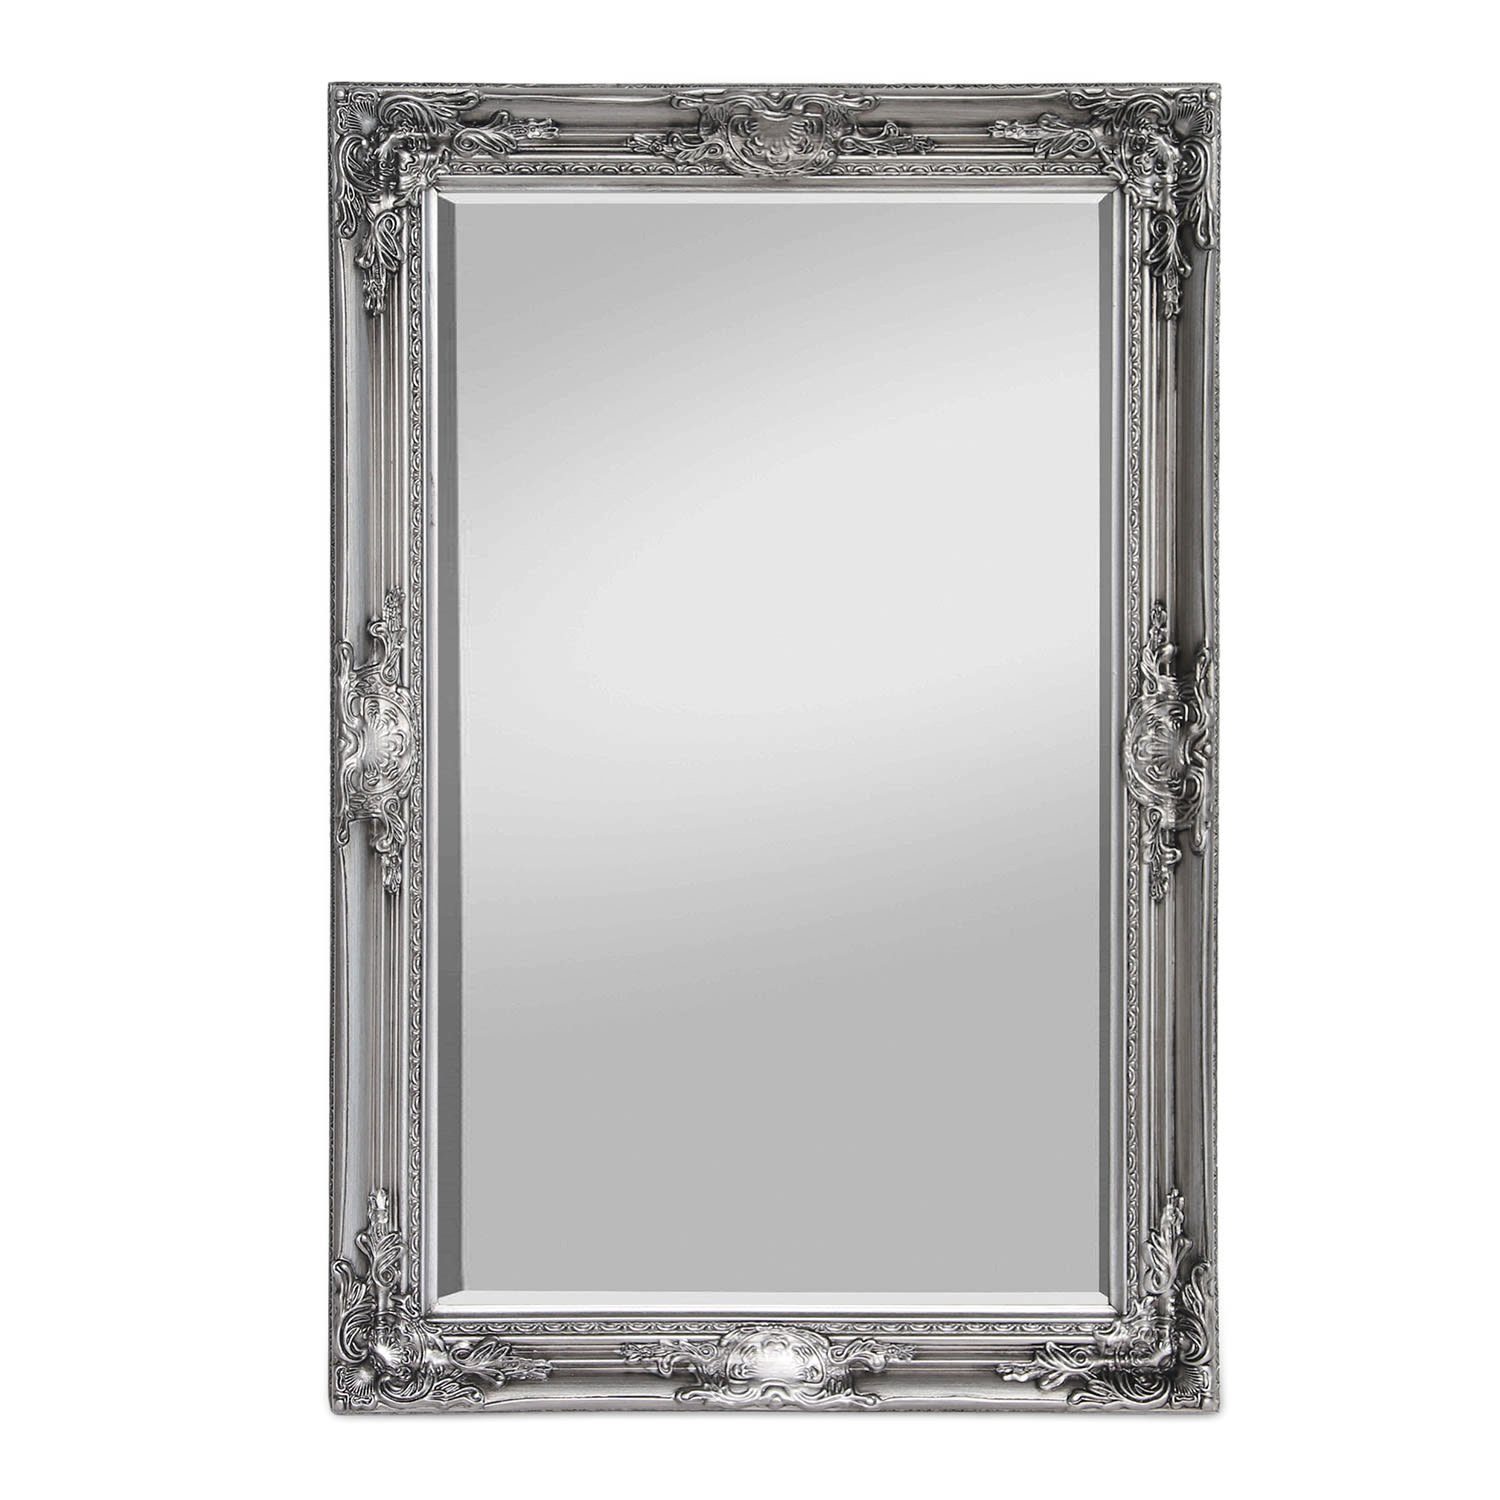 Casa Chic Spiegel Manchester Wandspiegel 90 x 60 cm Silber | Silber